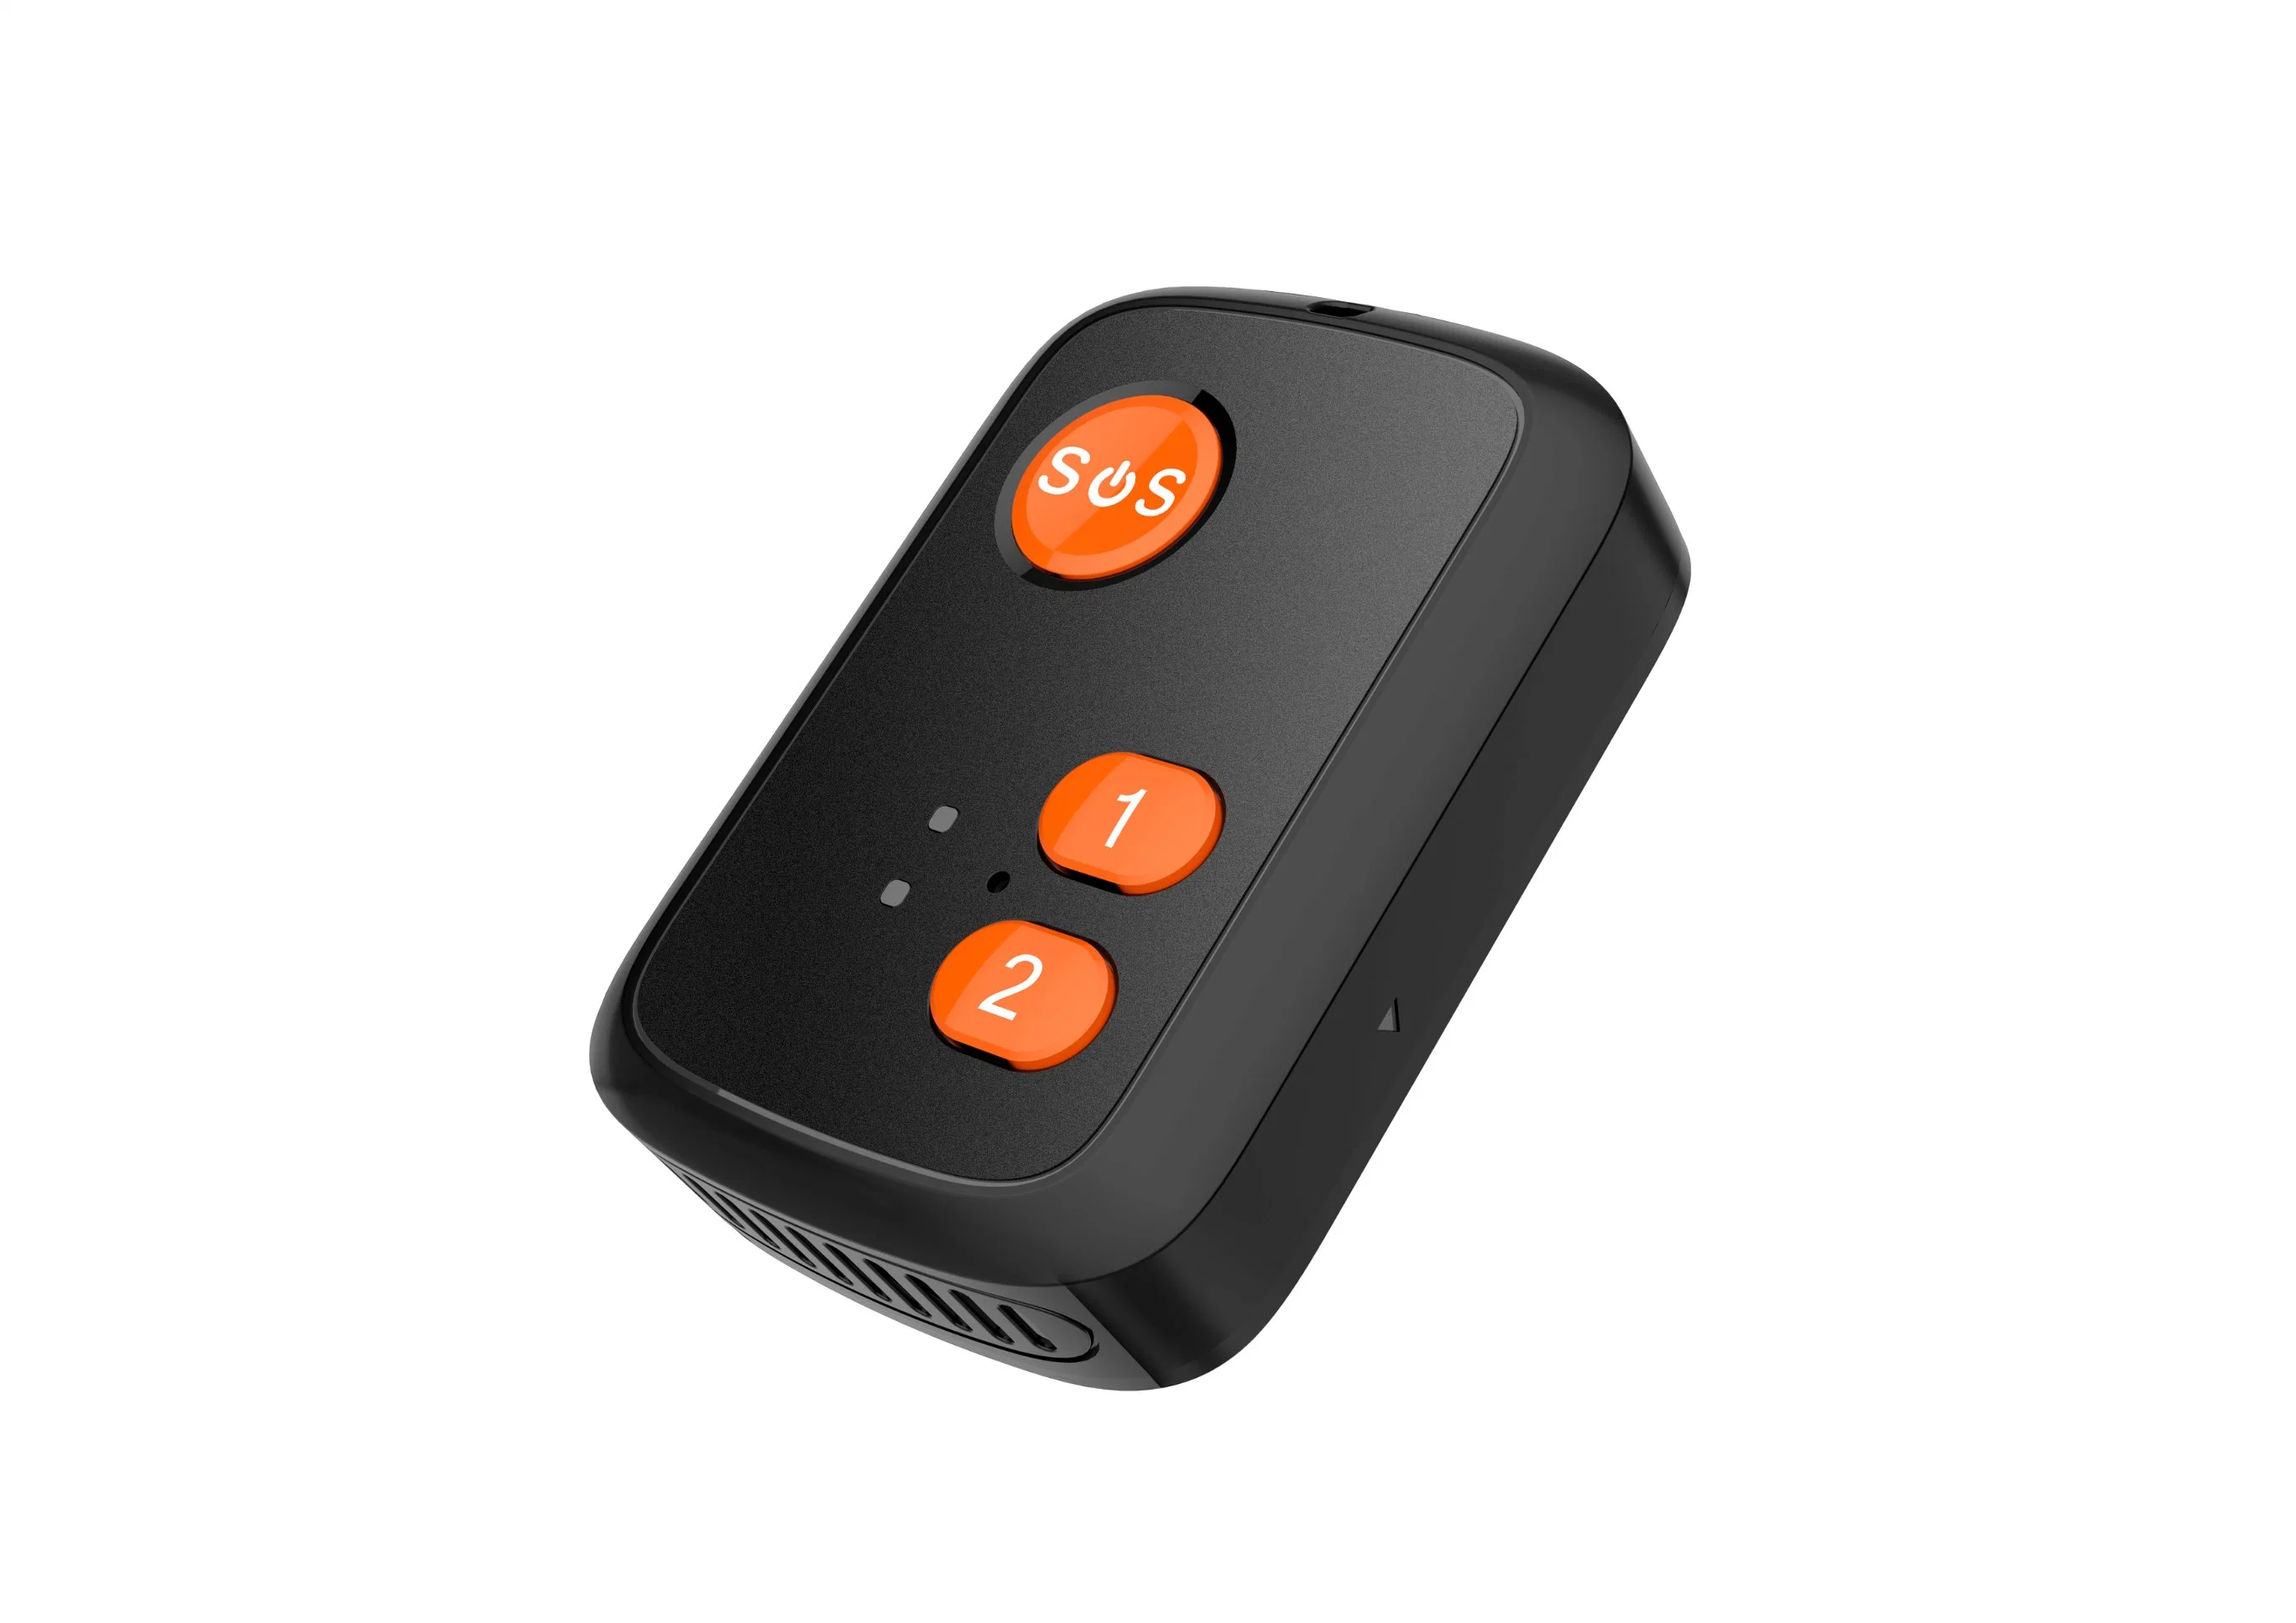 4G Mini Coche GPS Tracker mascota niños objetos de valor de la vibración Mover control de voz de alarma SMS Llamada Seguimiento Localizador 1000mA Plataforma Gratuita sistema de seguimiento GPS